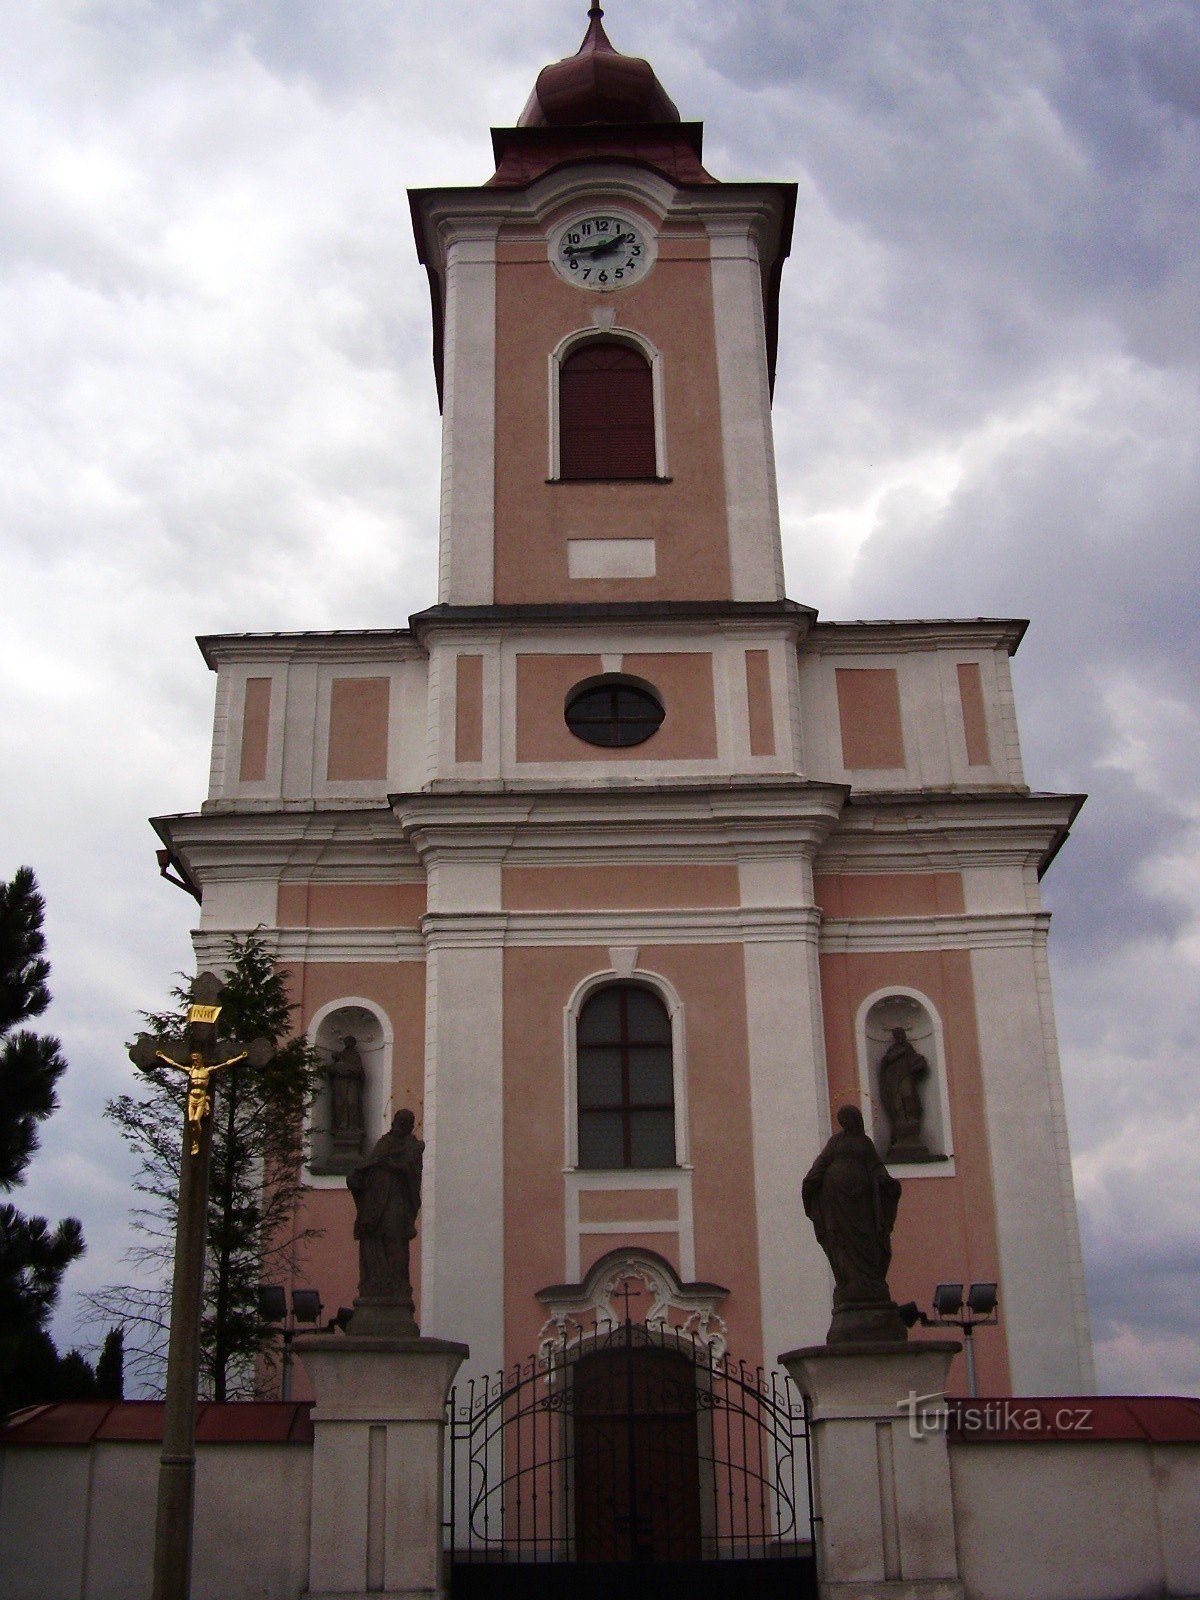 Nové Veselí - kyrka och statyer